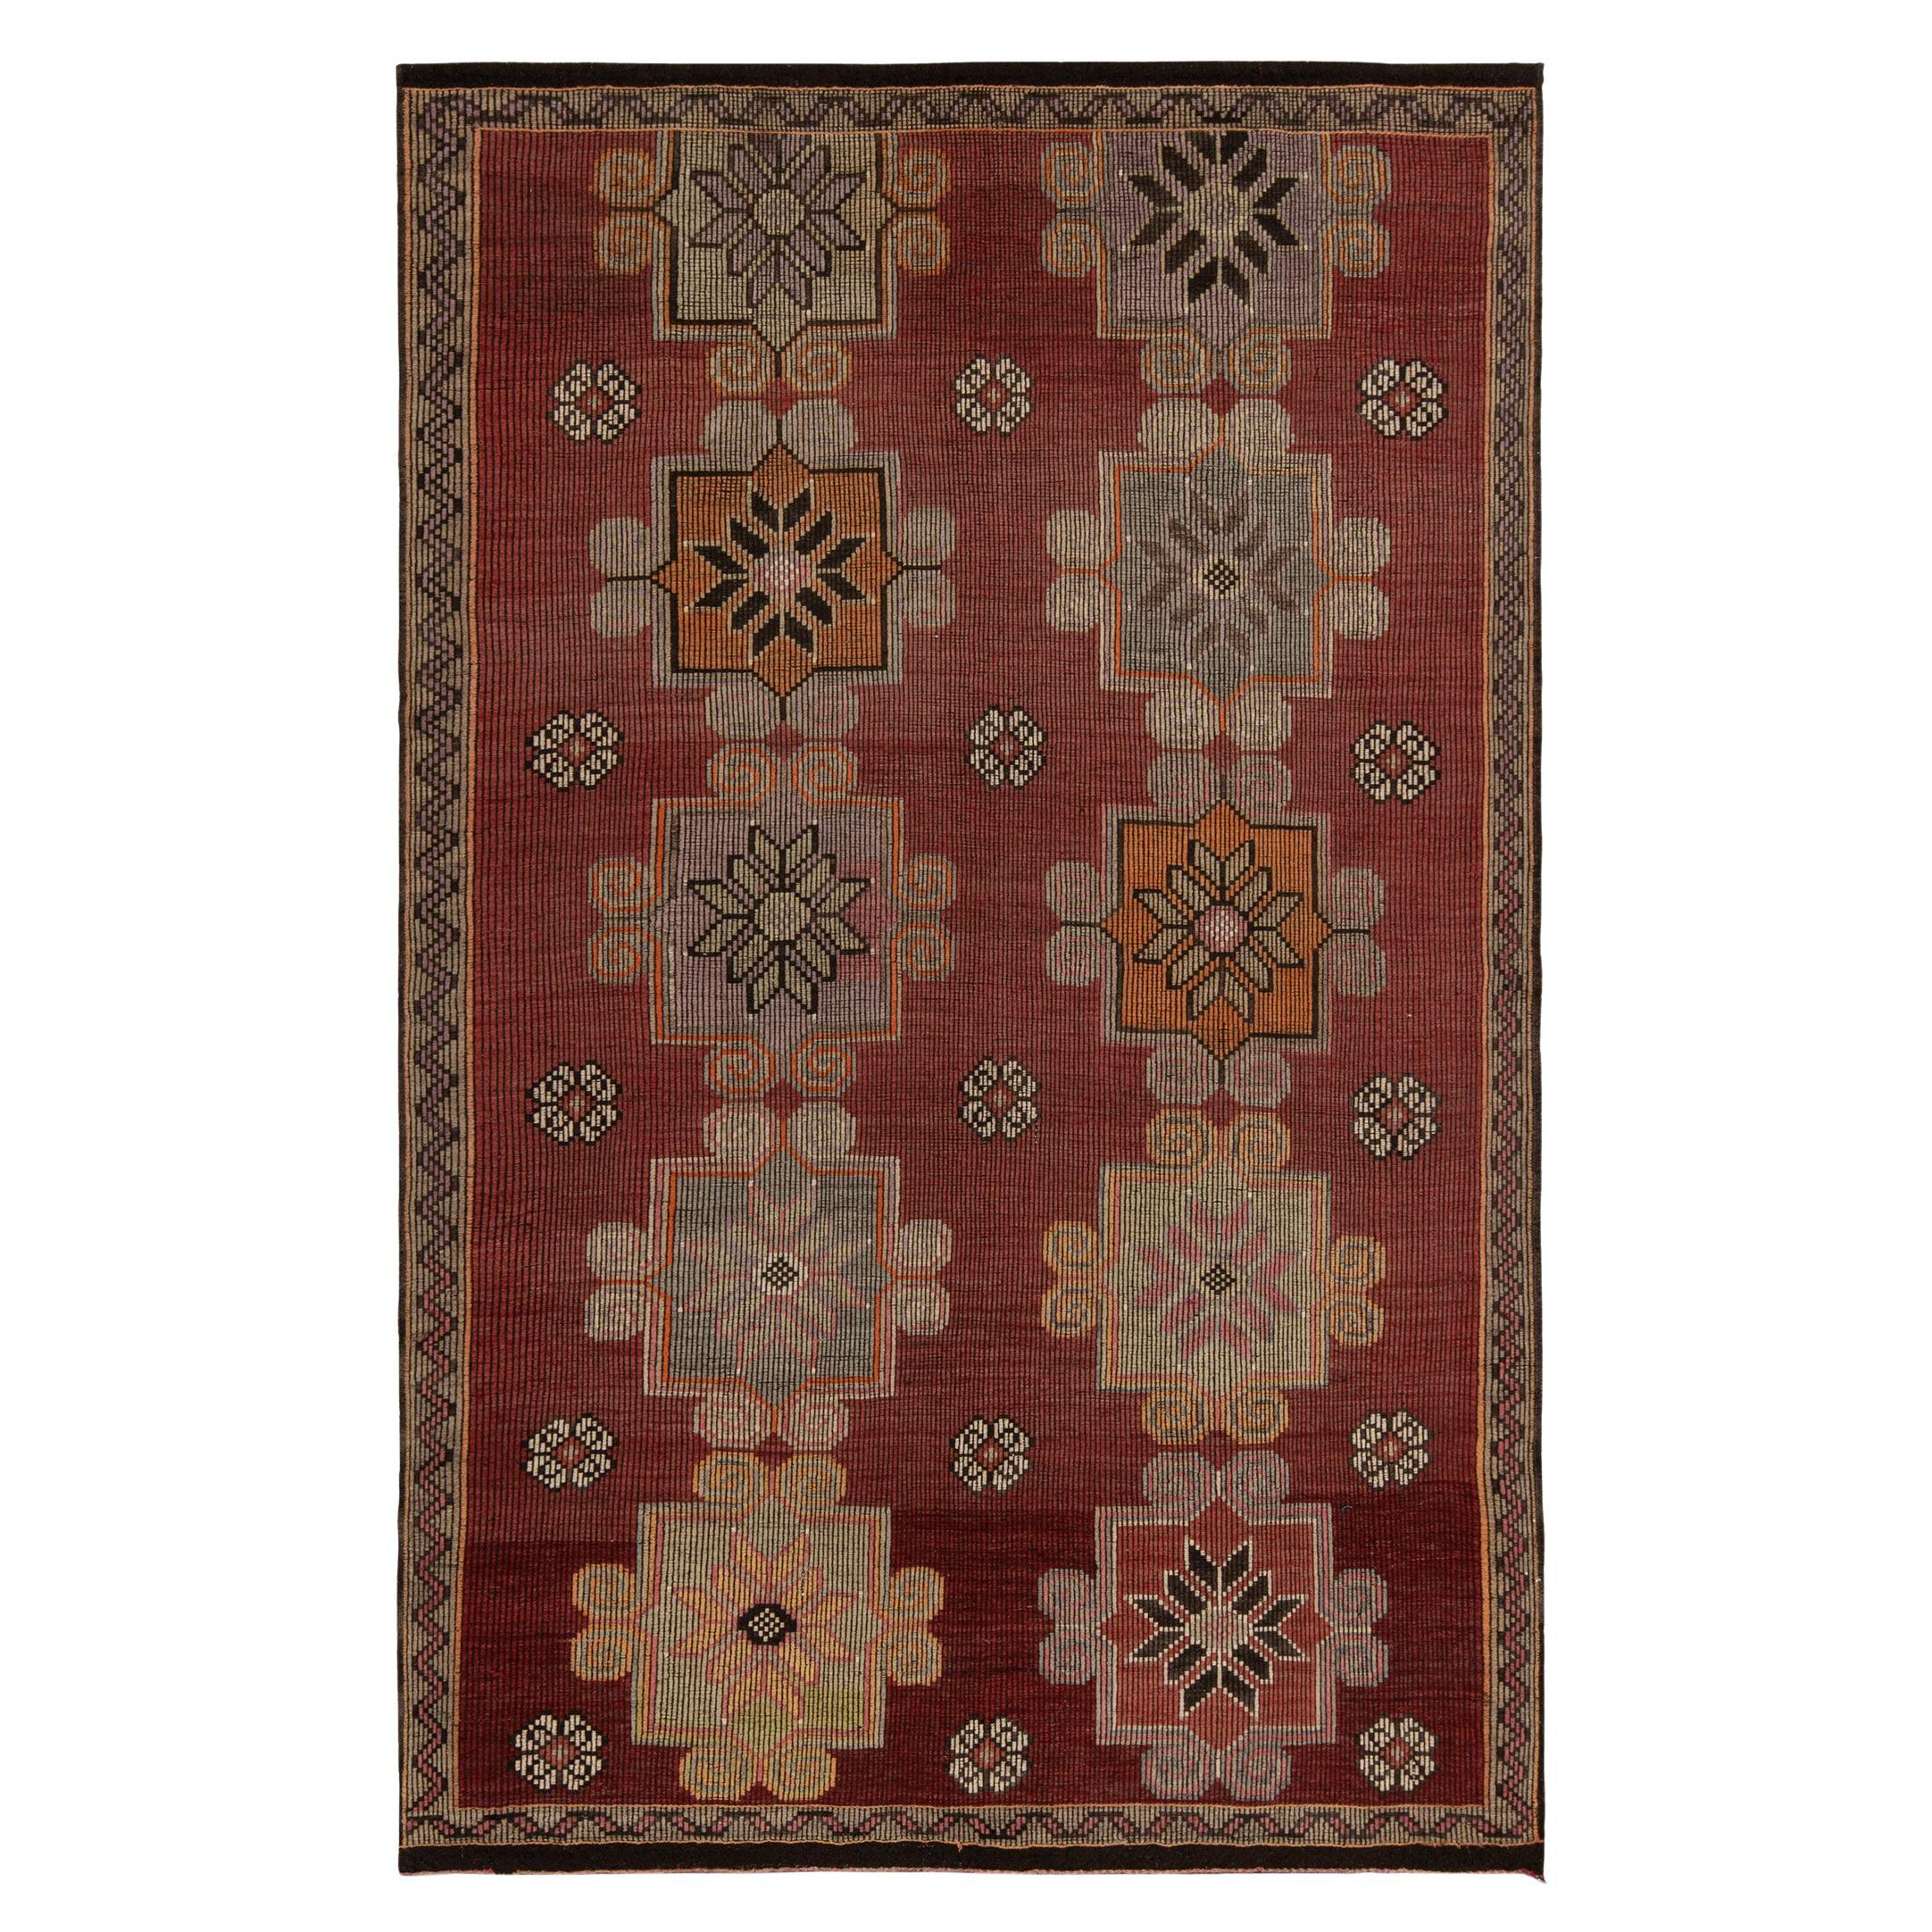 Tapis Kilim vintage rouge, marron à motif floral géométrique et tribal par Rug & Kilim